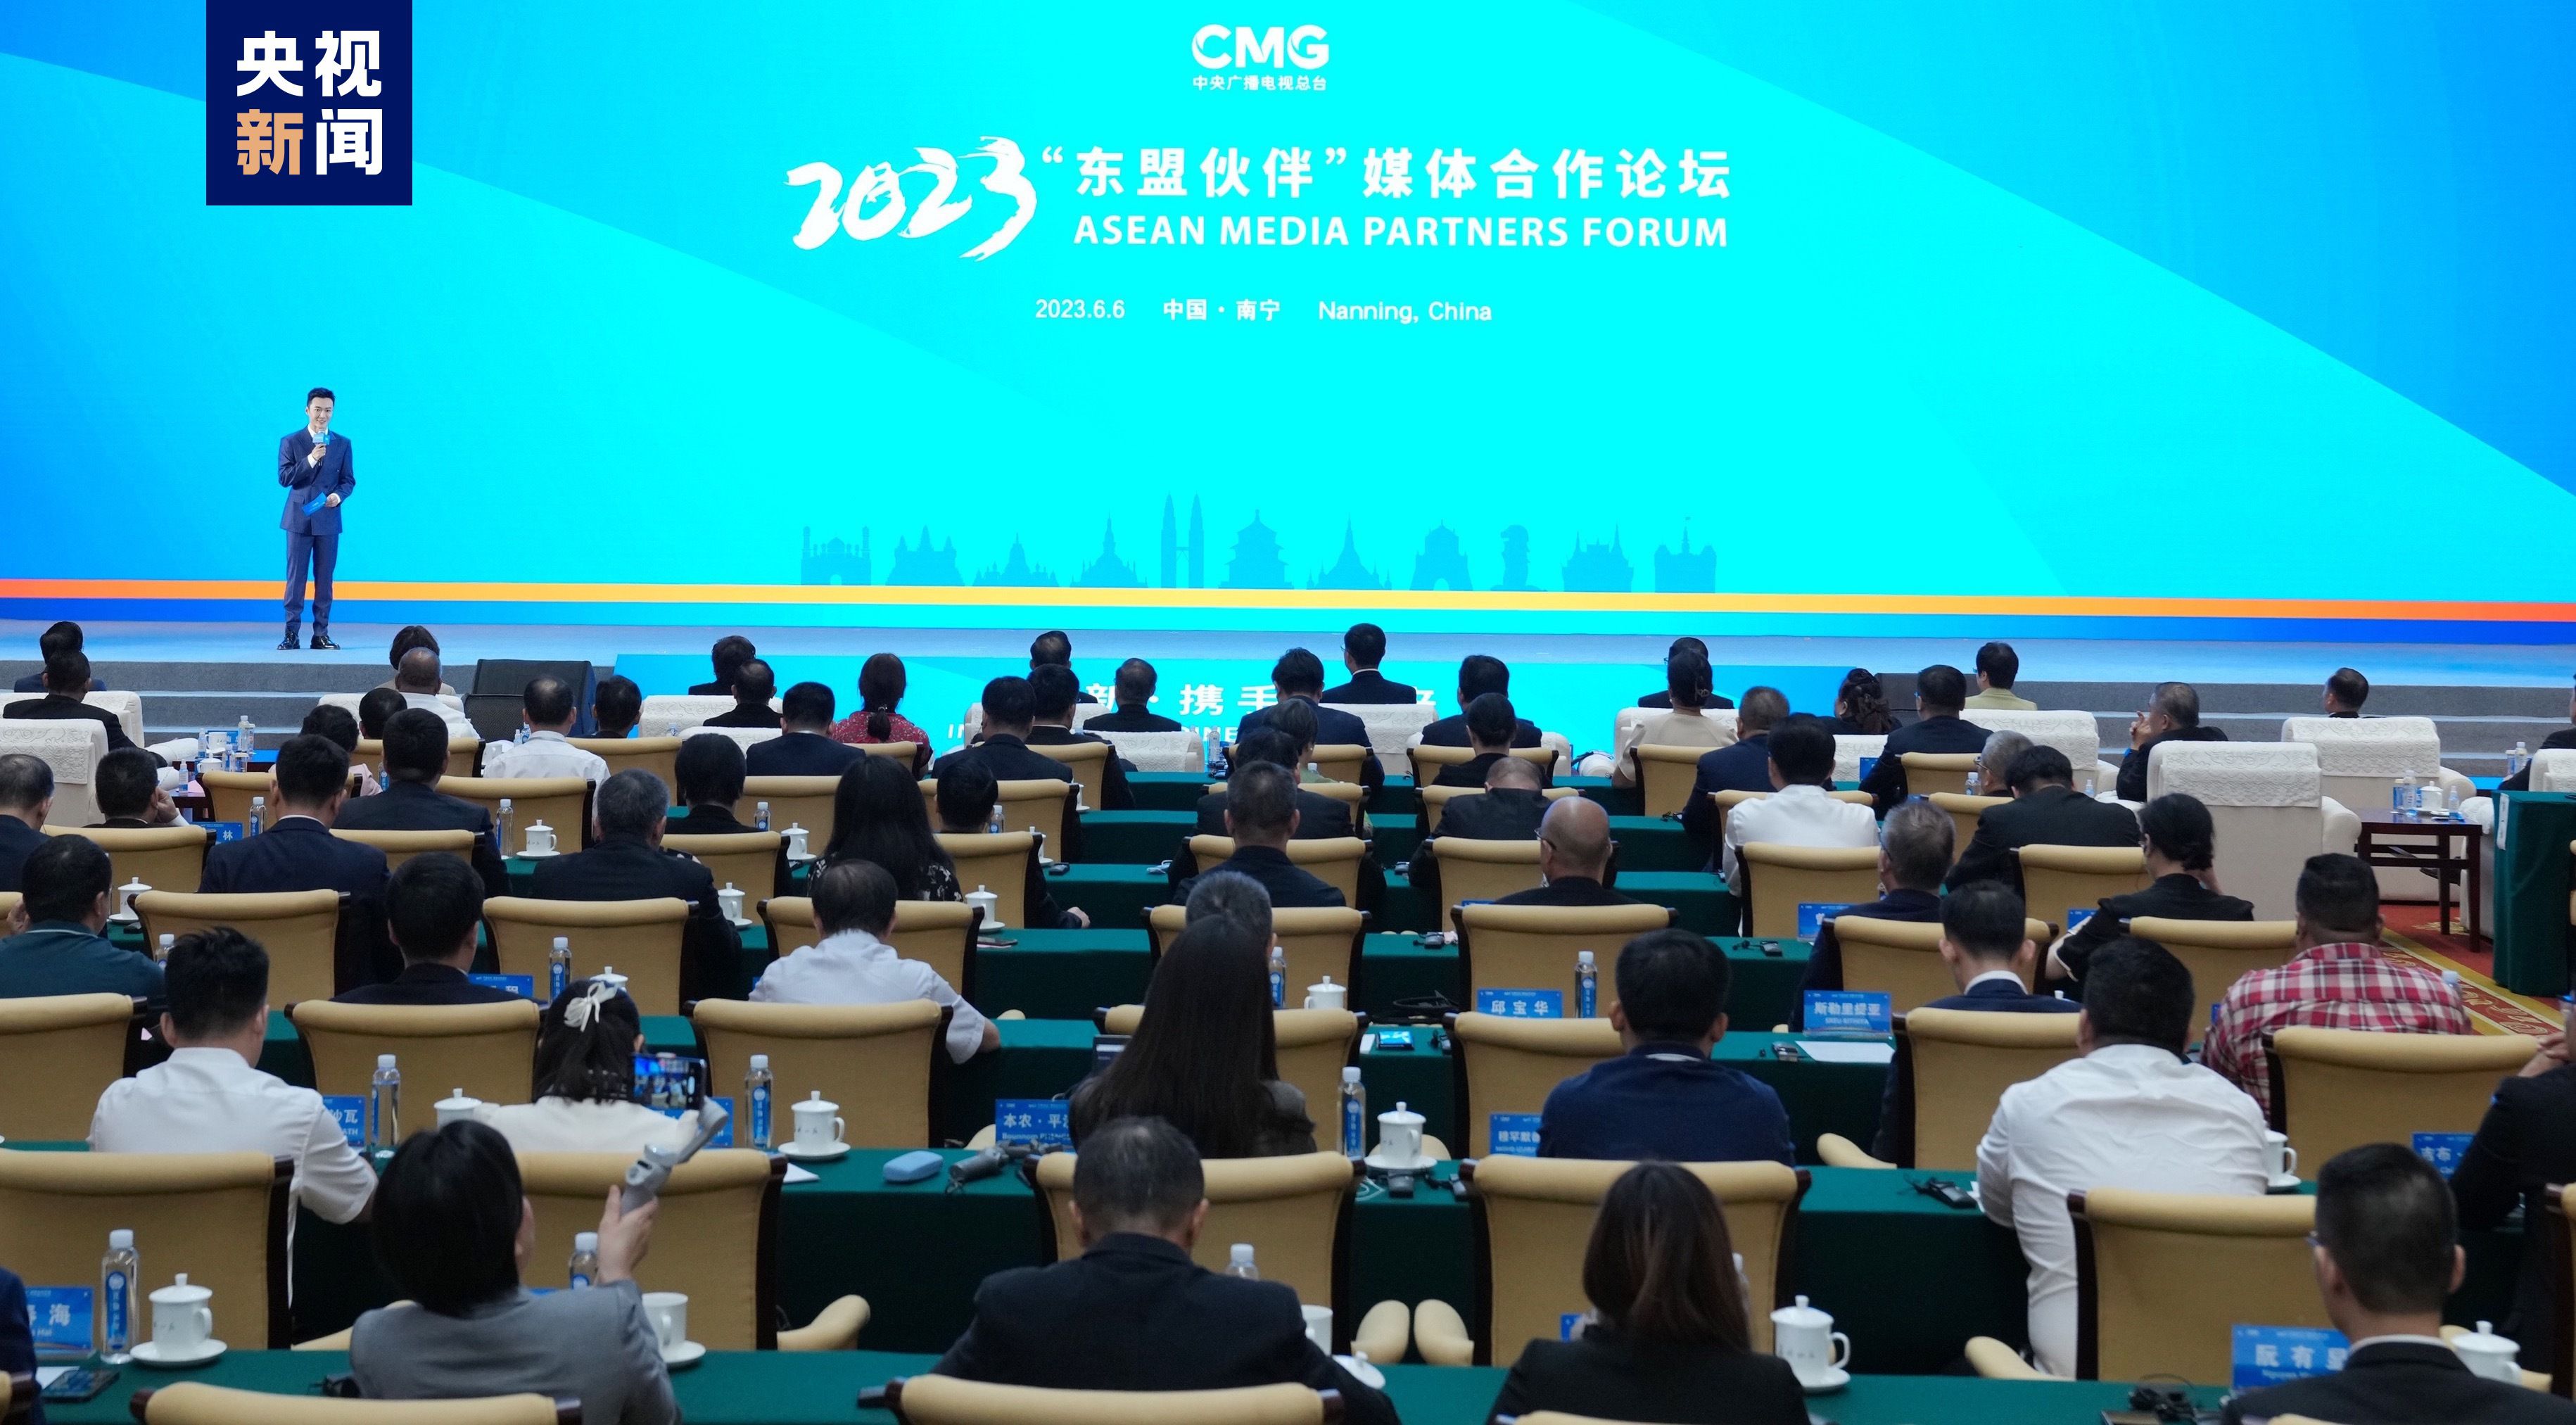 创新 携手 未来！2023“东盟伙伴”媒体合作论坛在广西举行